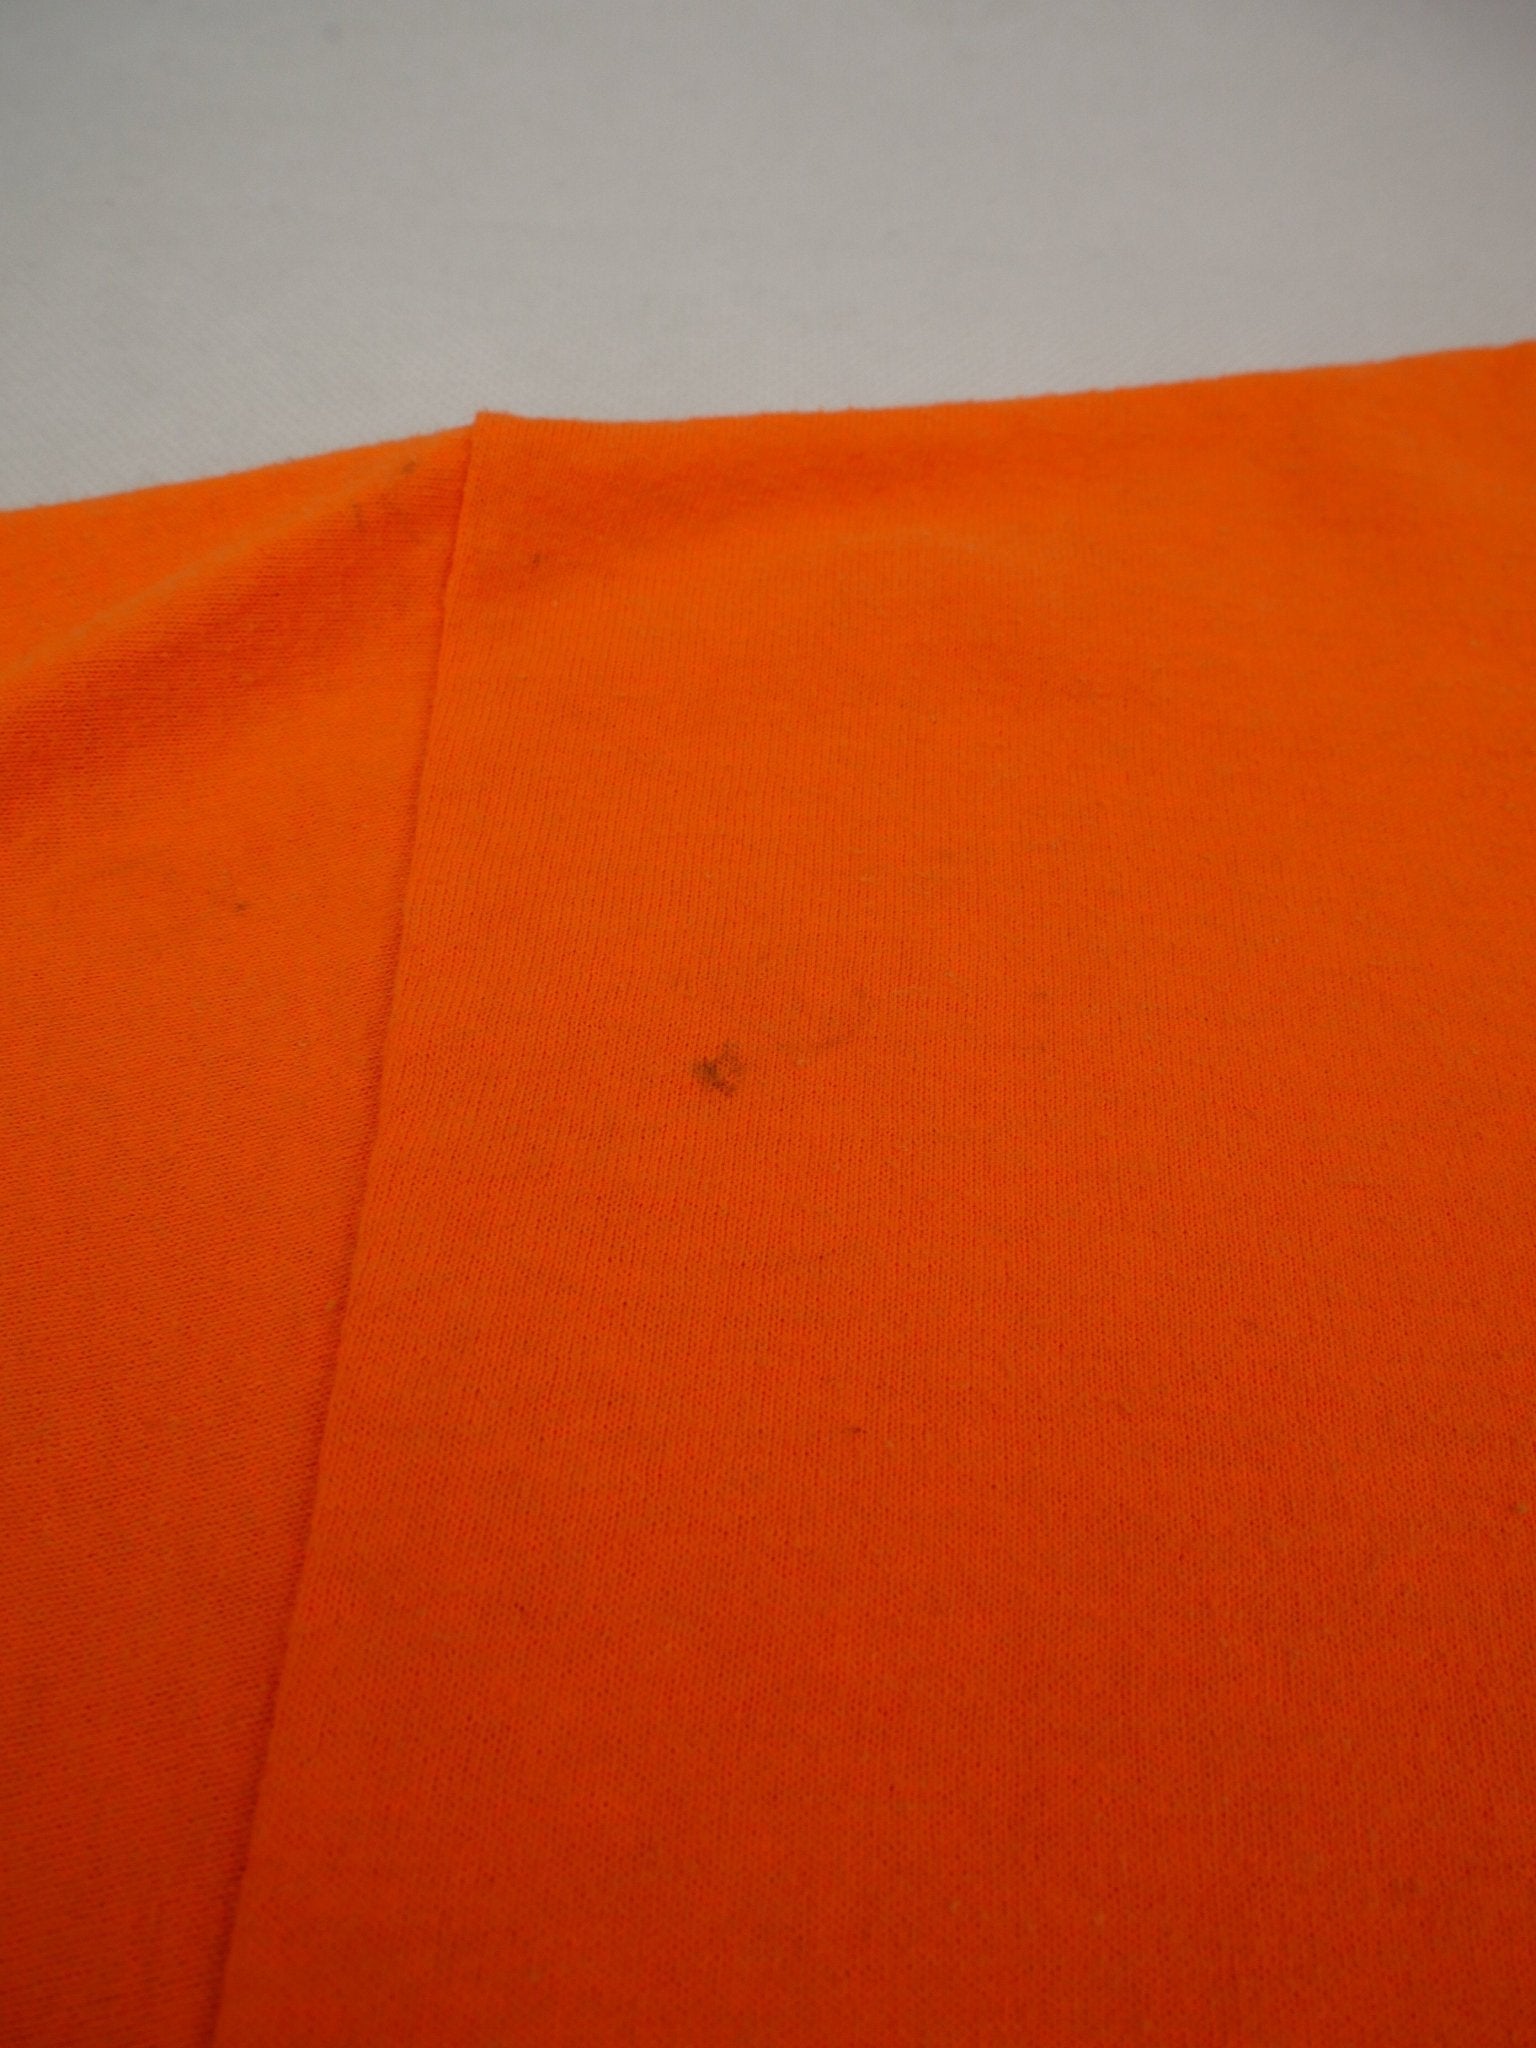 harley printed Logo orange Shirt - Peeces